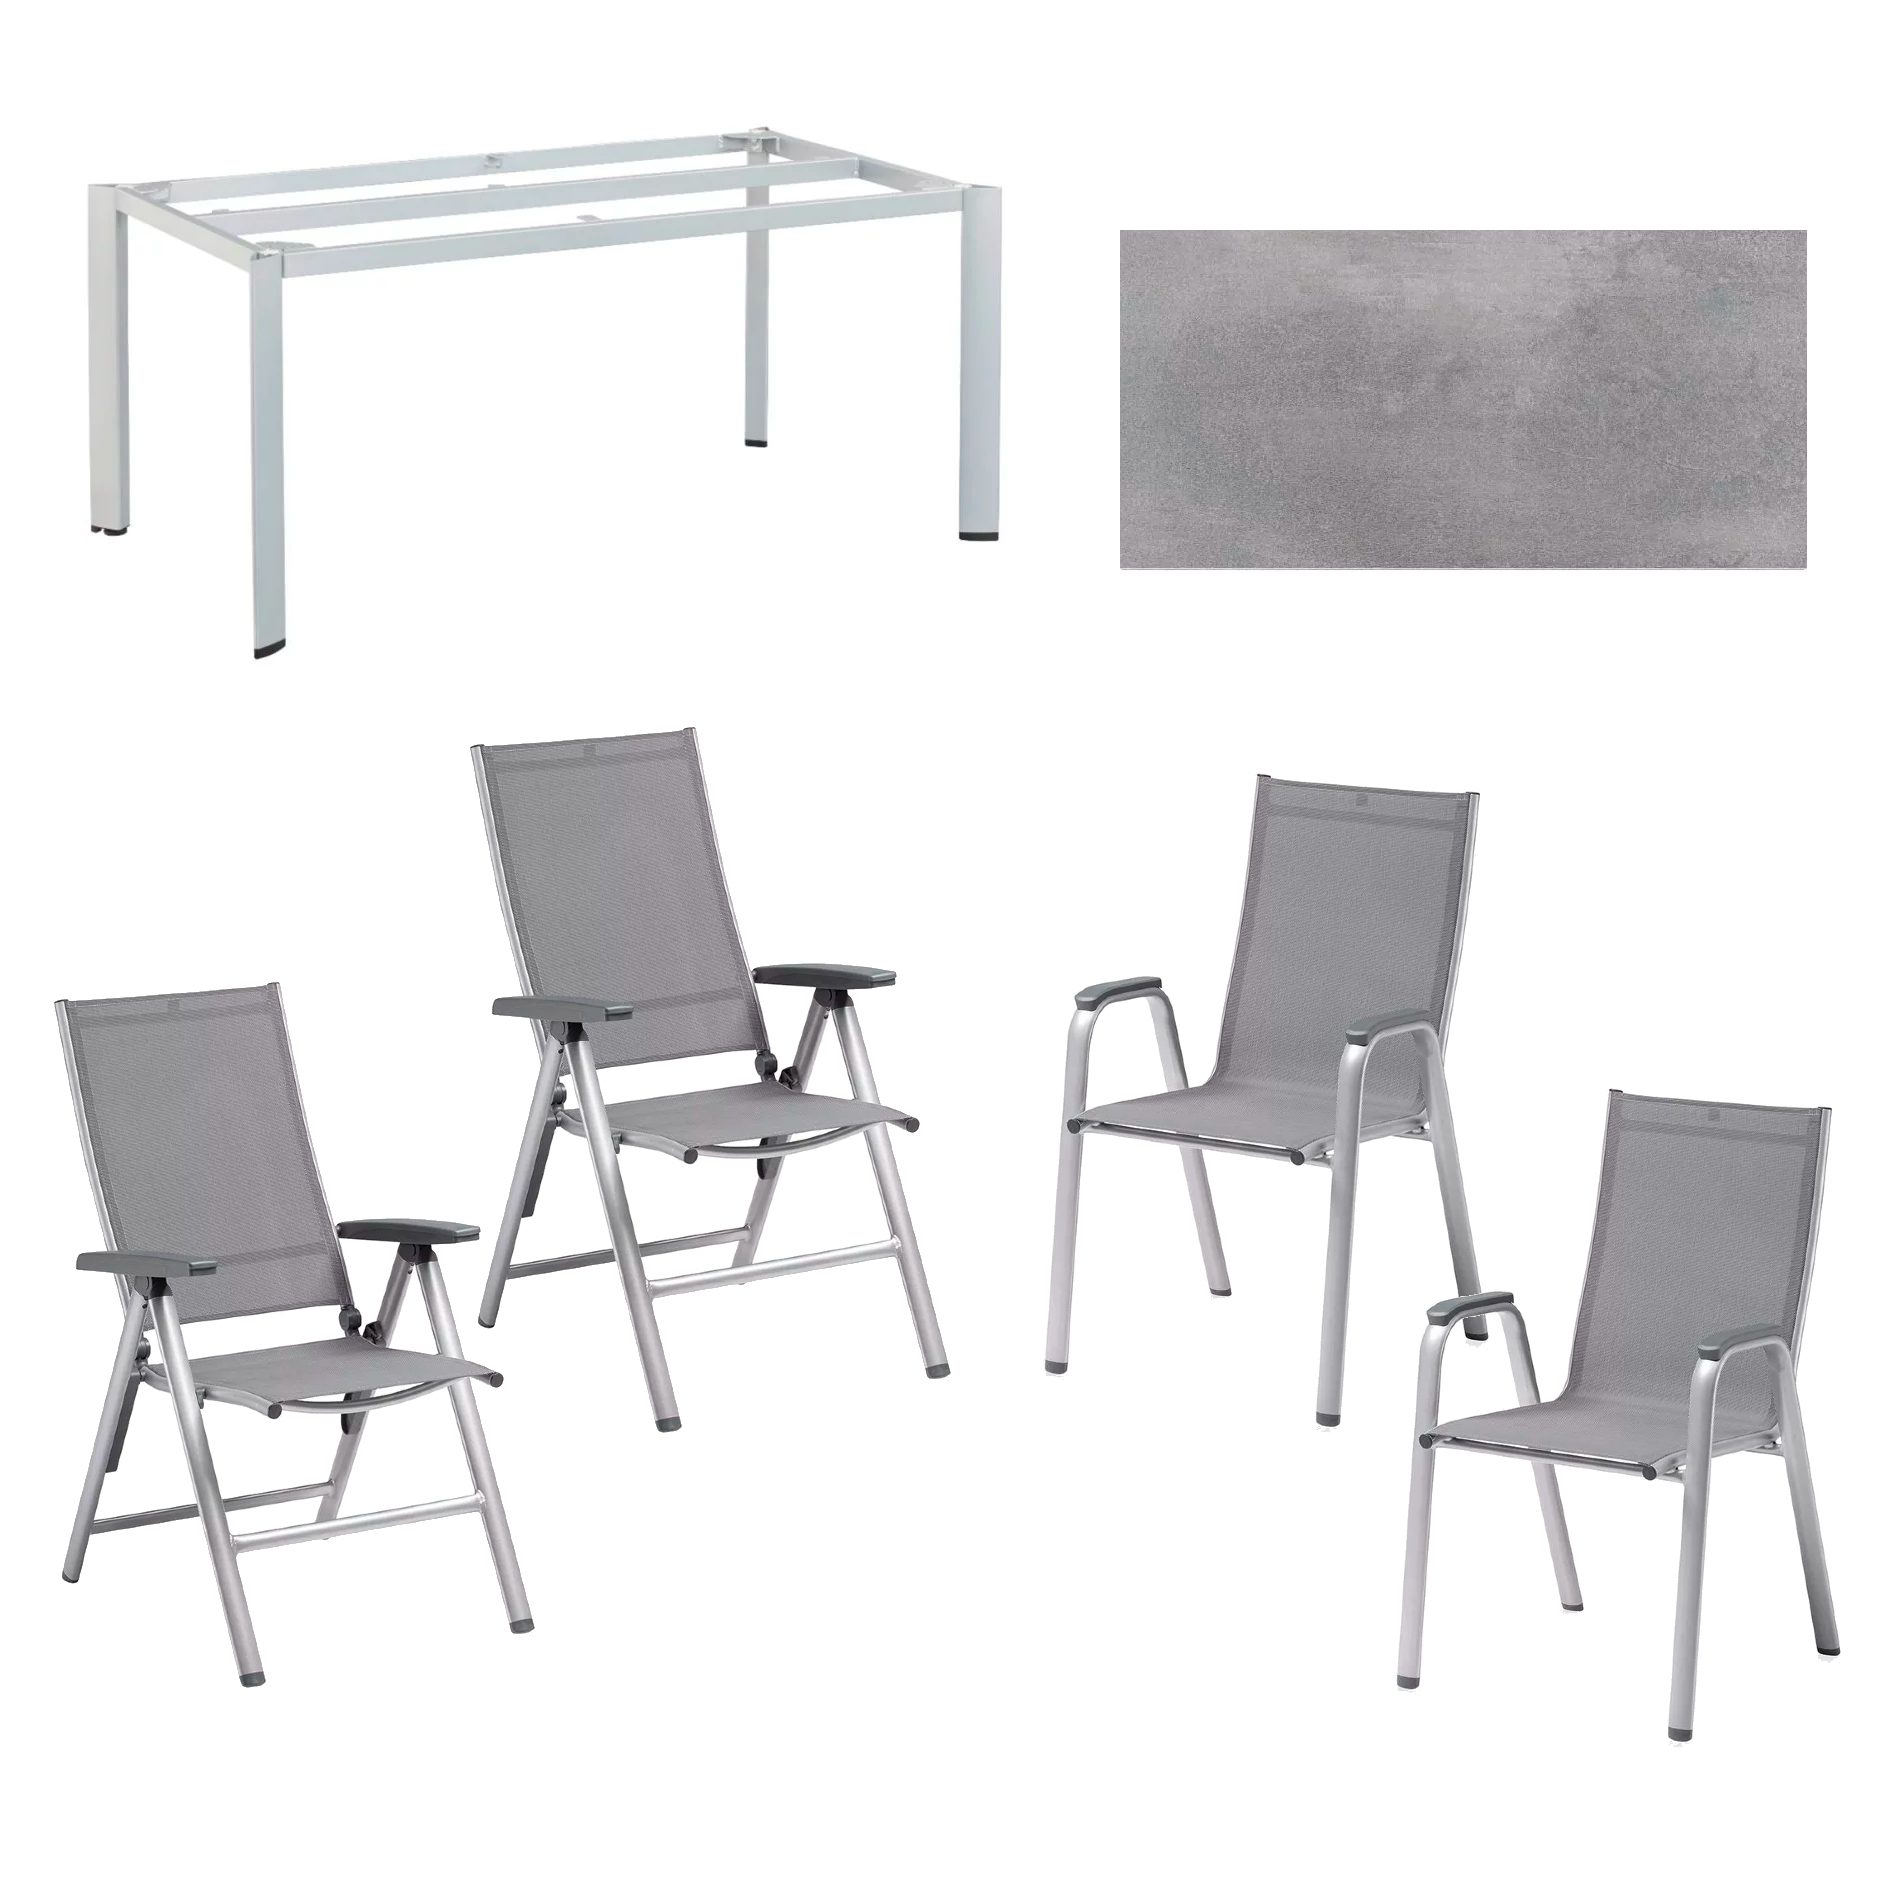 Kettler "Cirrus" Silver-Line Klapp- und Stapelsessel mit Tisch "Edge", Gestell Alu silber, HPL-Platte silbergrau